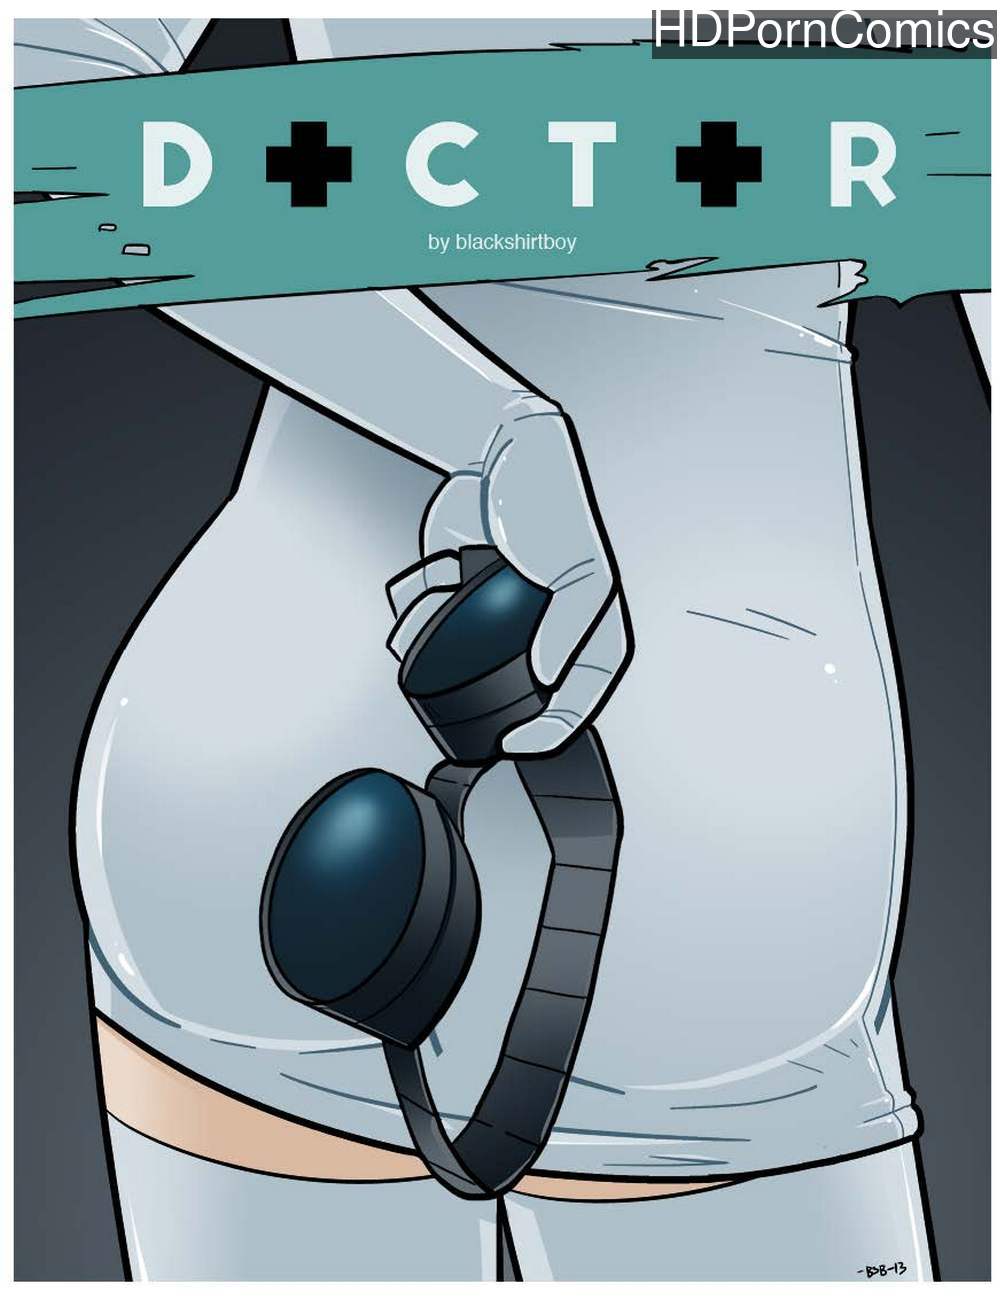 Doctor Cartoon Porn Comics - Doctor comic porn - HD Porn Comics